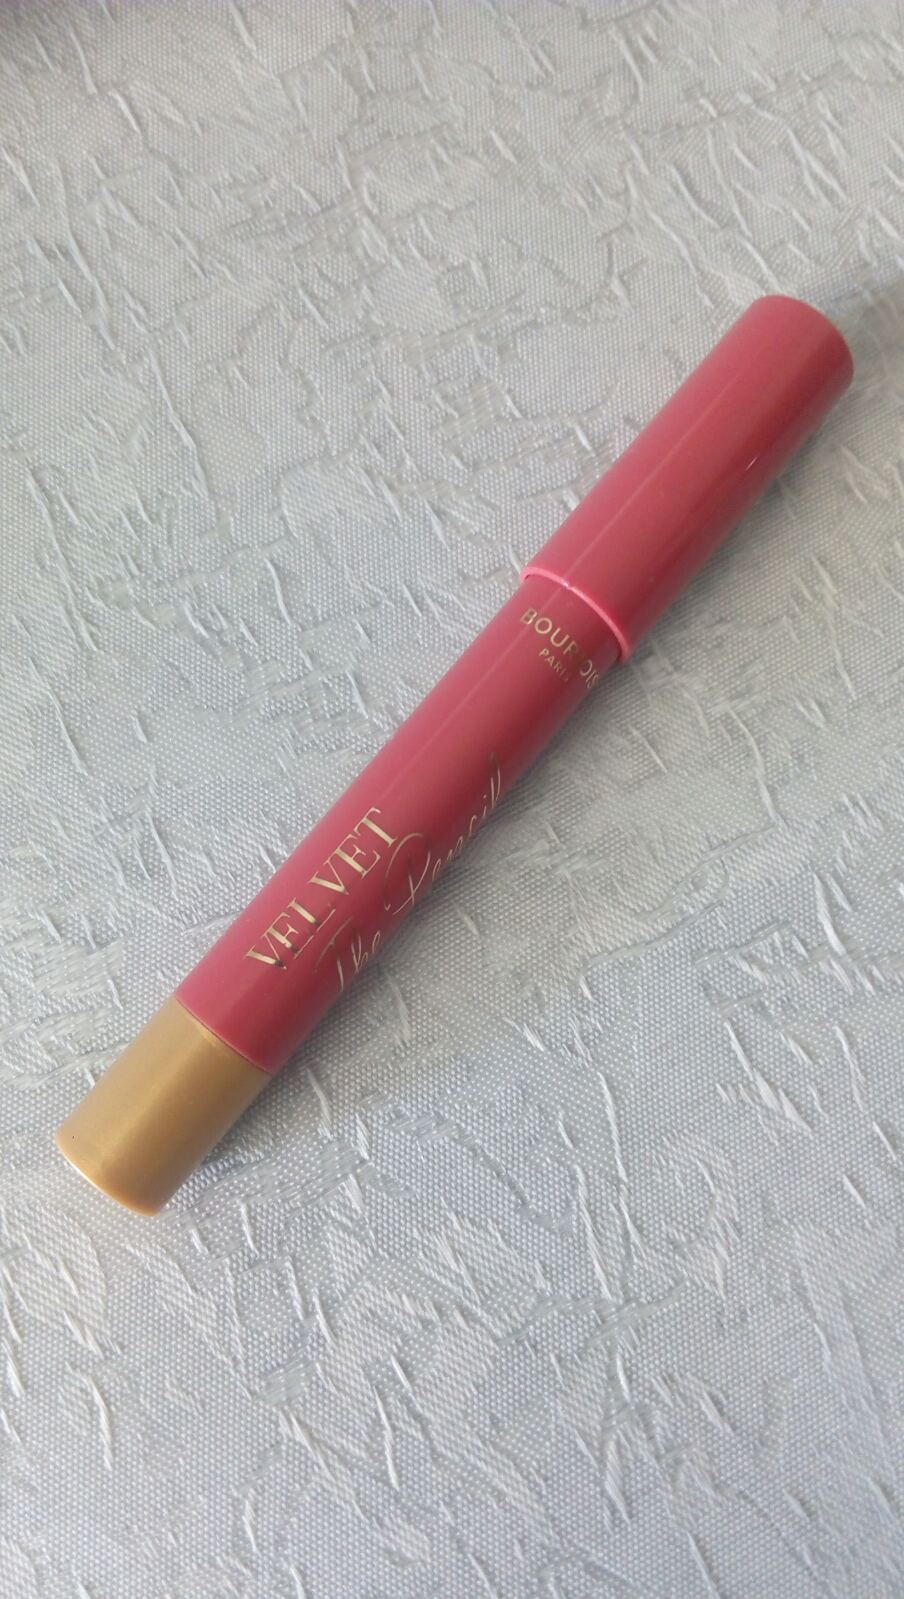 Bourjois Velvet The Pencil Lipstick